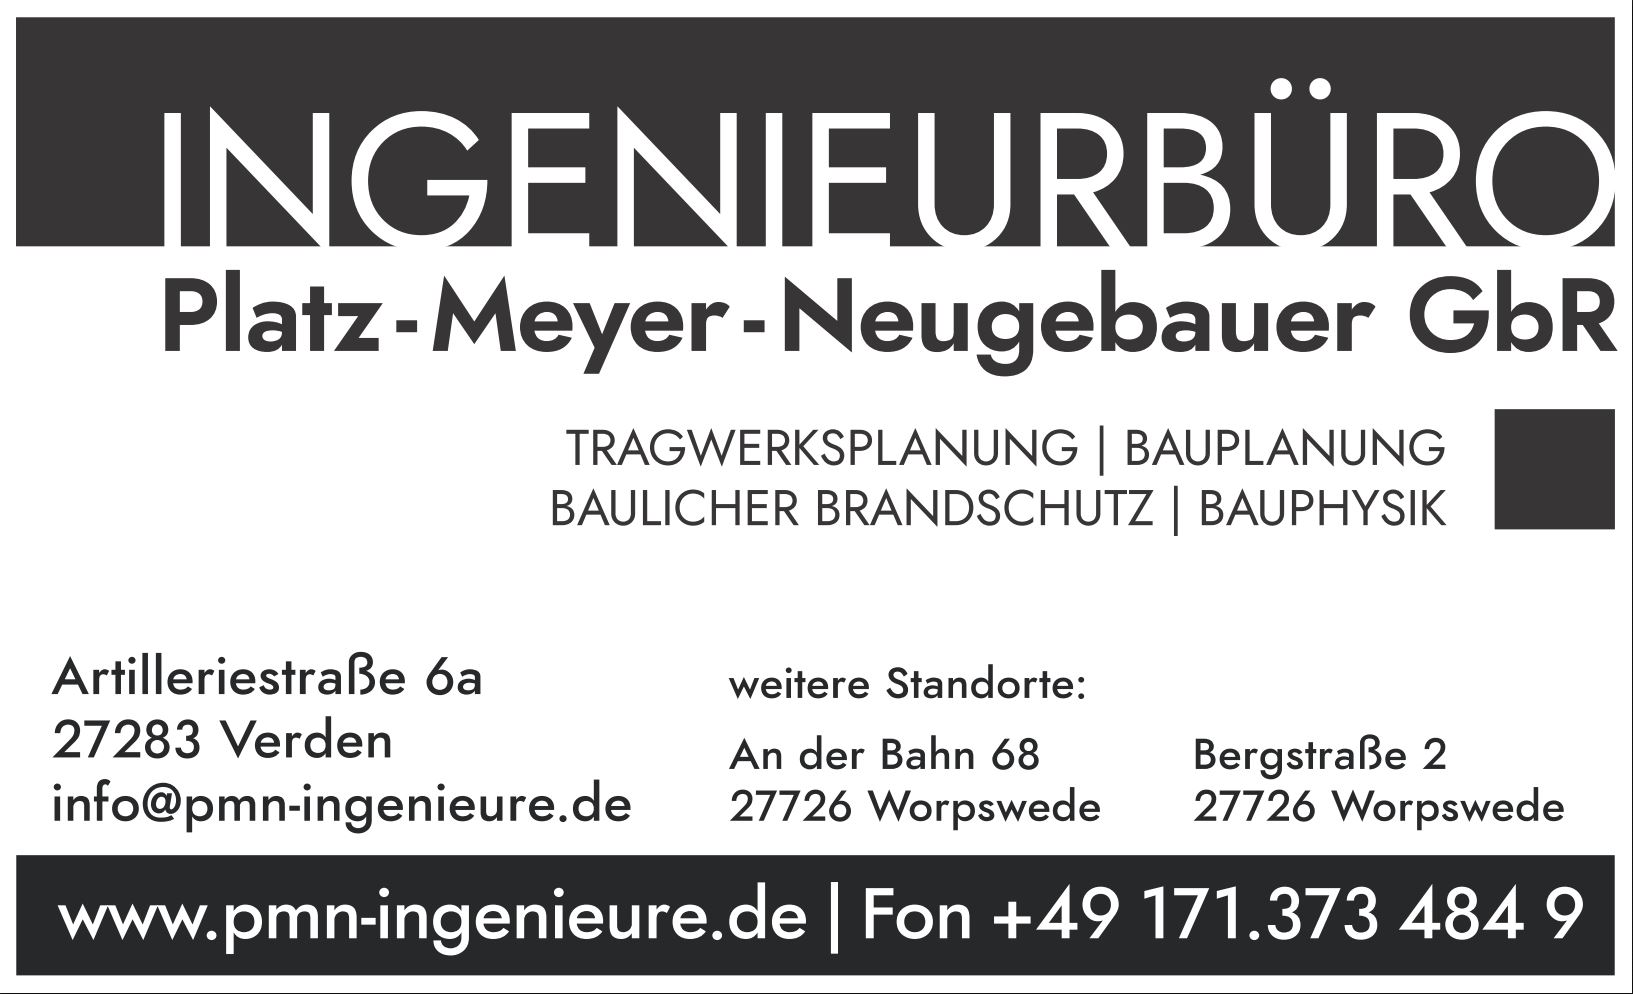 Platz - Meyer - Neugebauer GbR